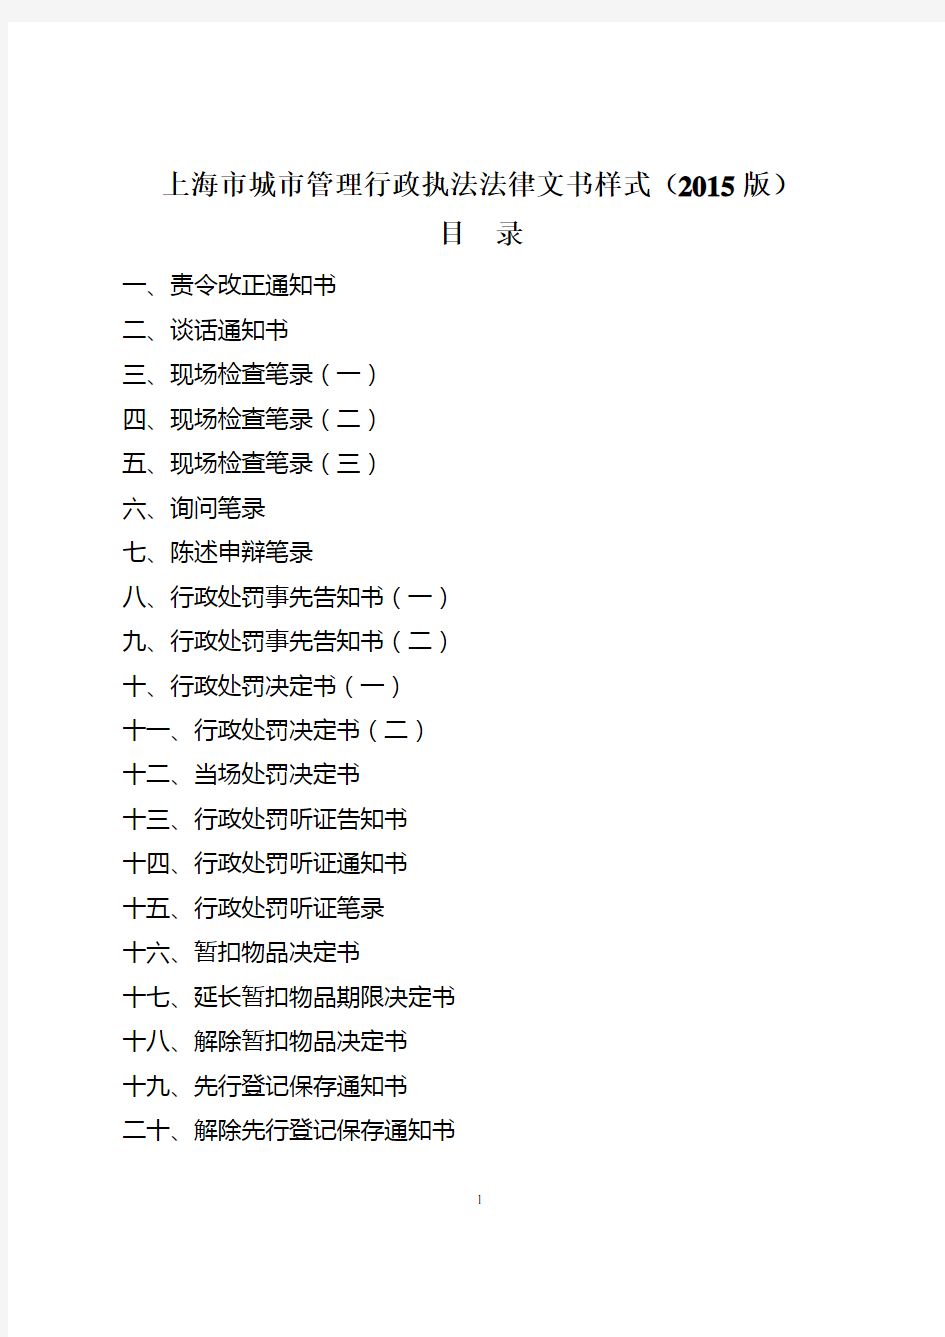 上海城市管理行政执法法律文书样式